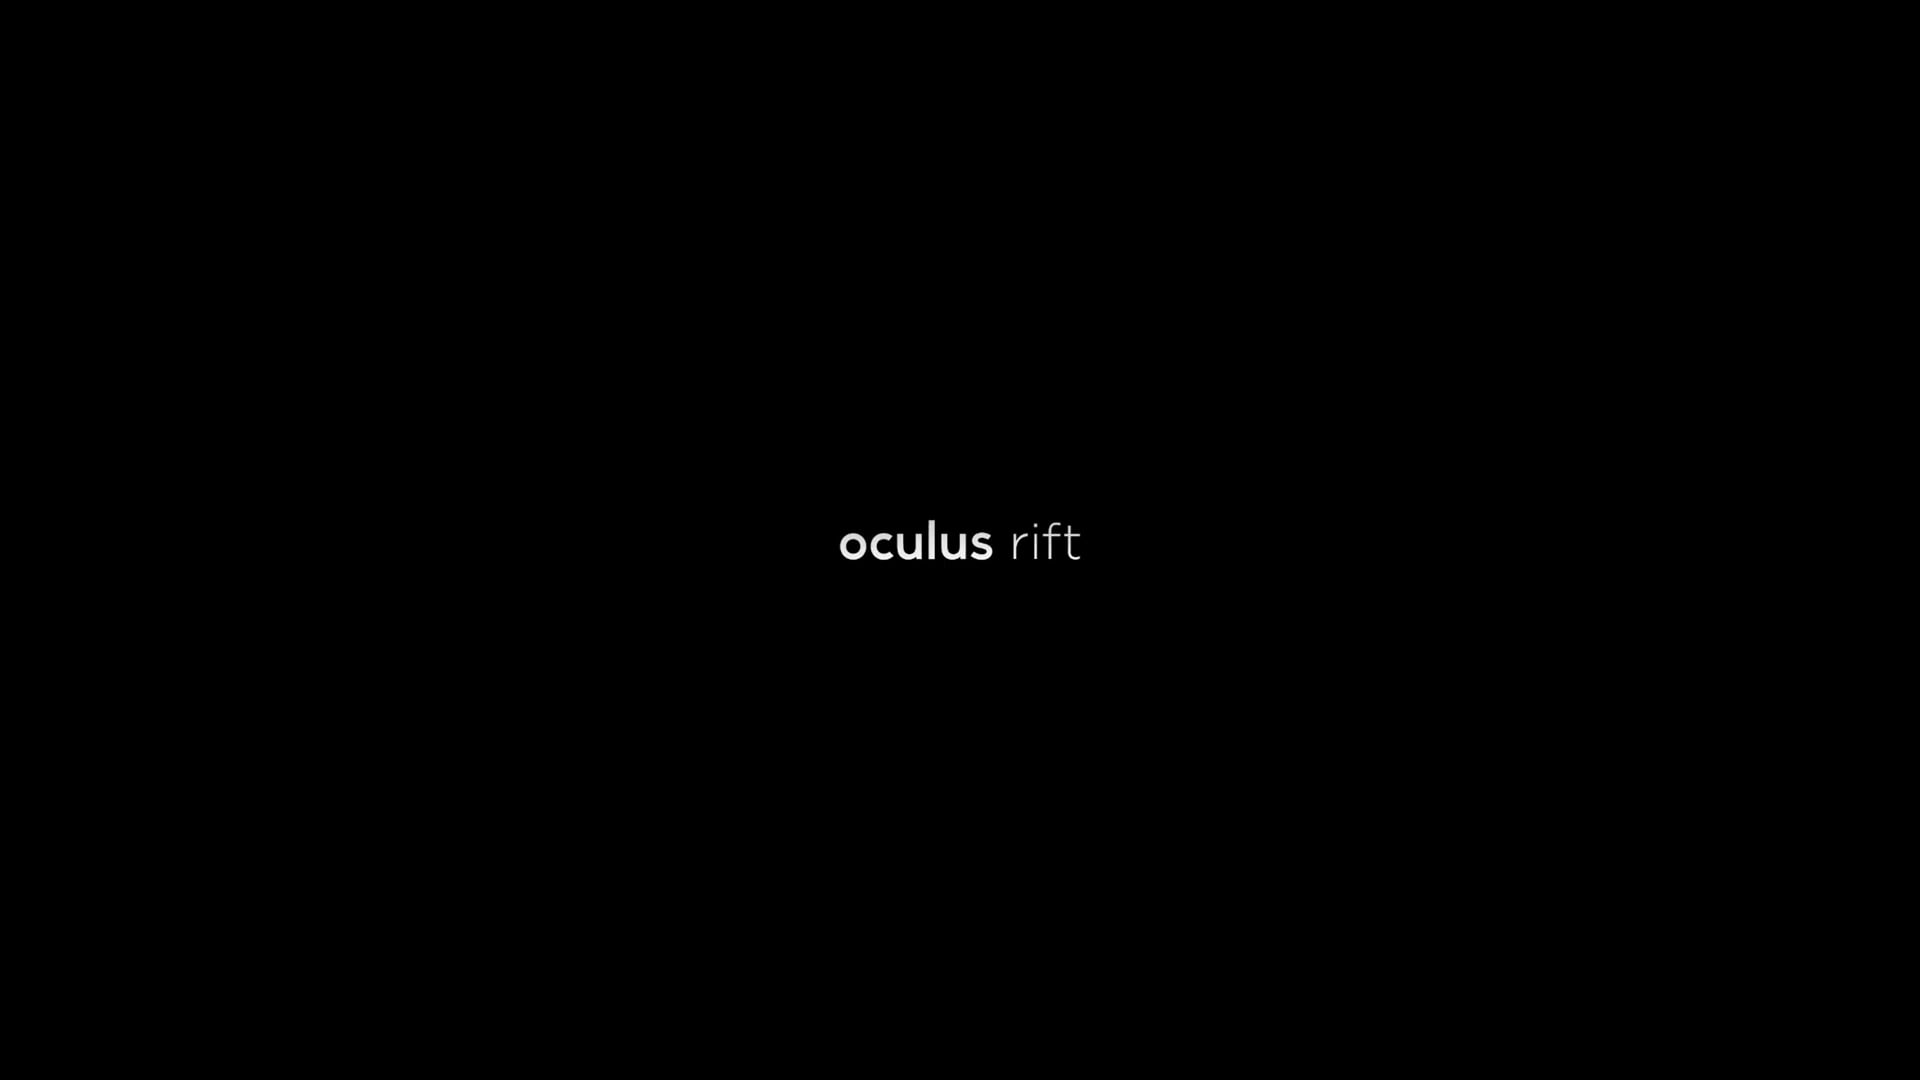 A Boy's Wish - Oculus Rift